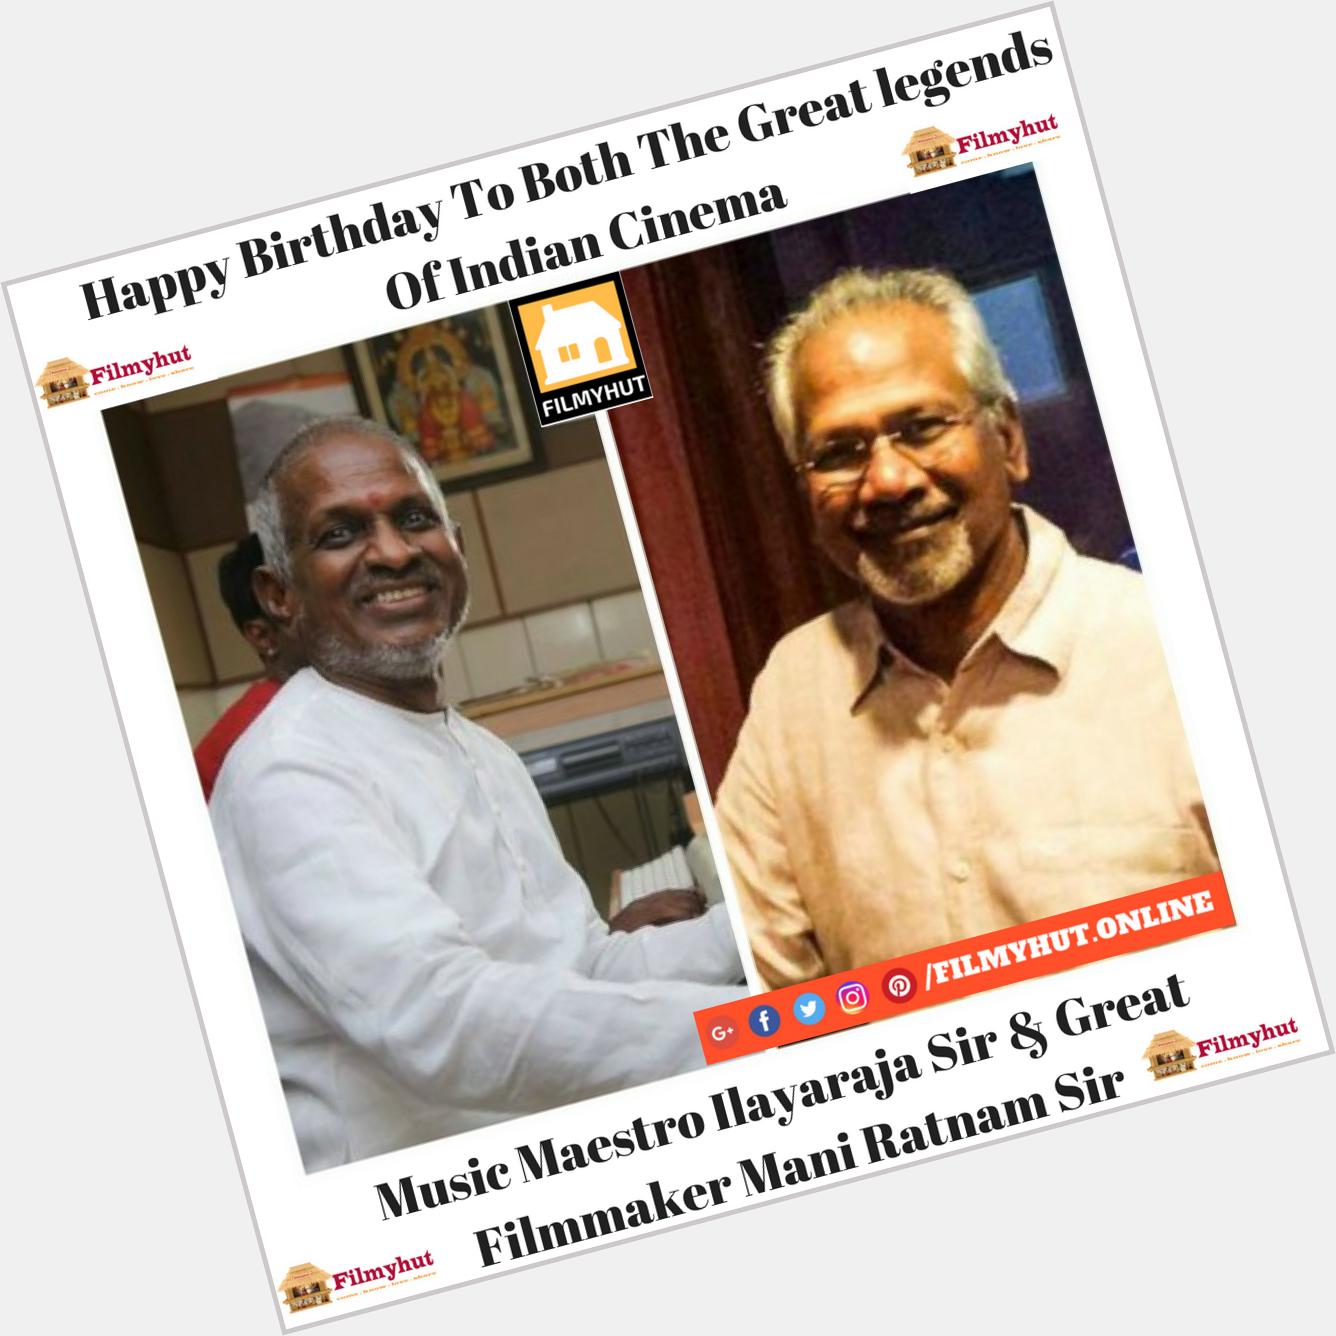   Happy birthday Ilayaraja Sir & Mani Ratnam Sir 